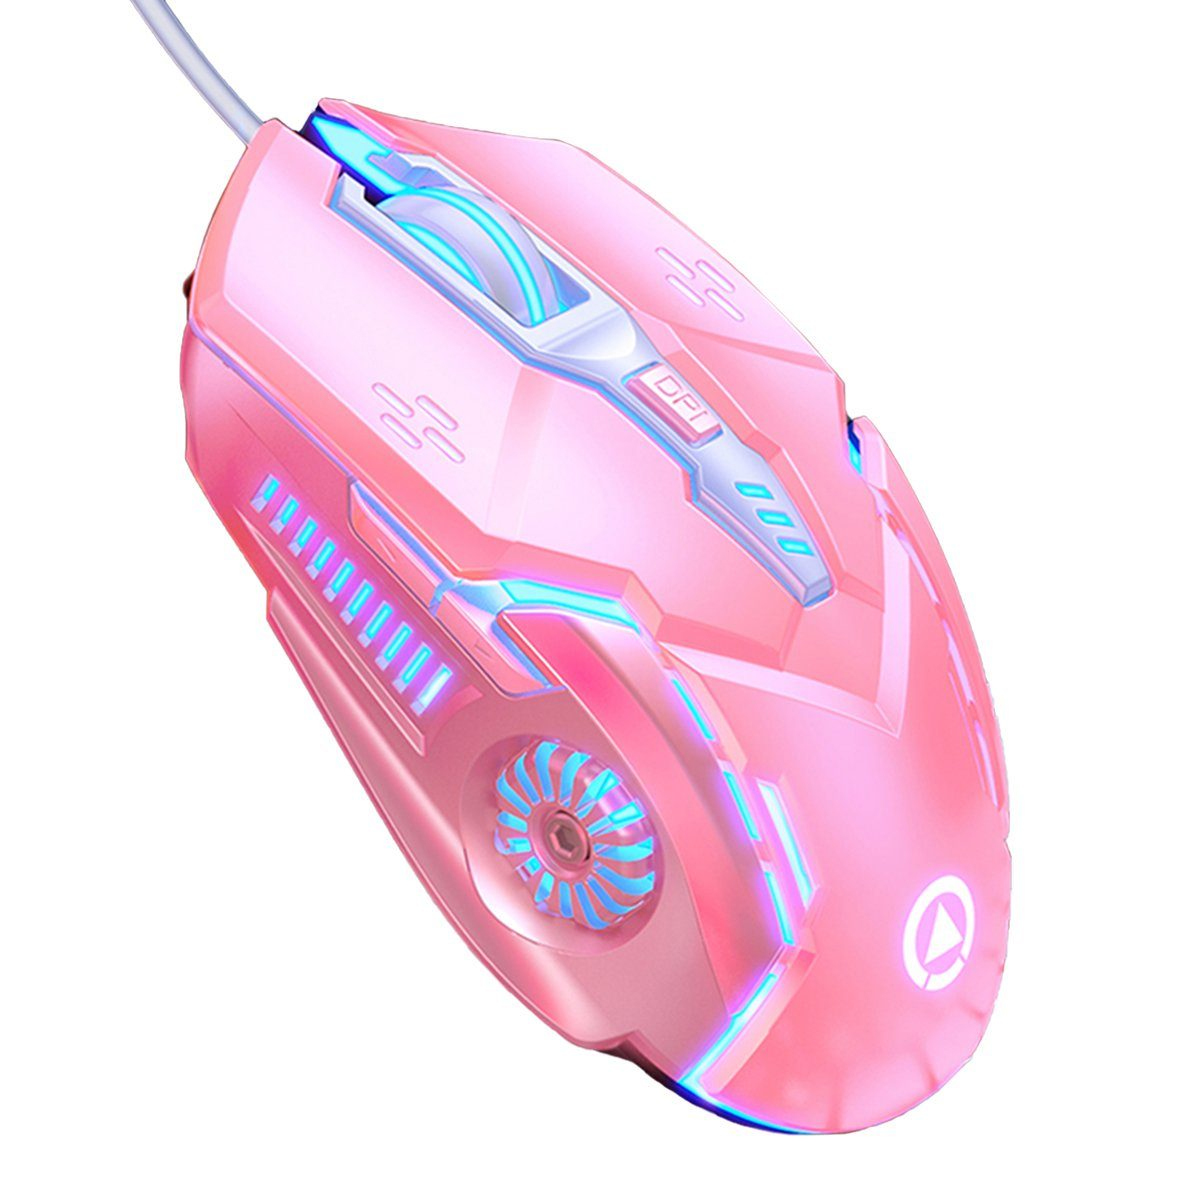 KINSI mechanische Maus,kabelgebundene Maus,Sound-Maus,Gaming-Maus,6-Tasten Gaming-Maus rosa Maus